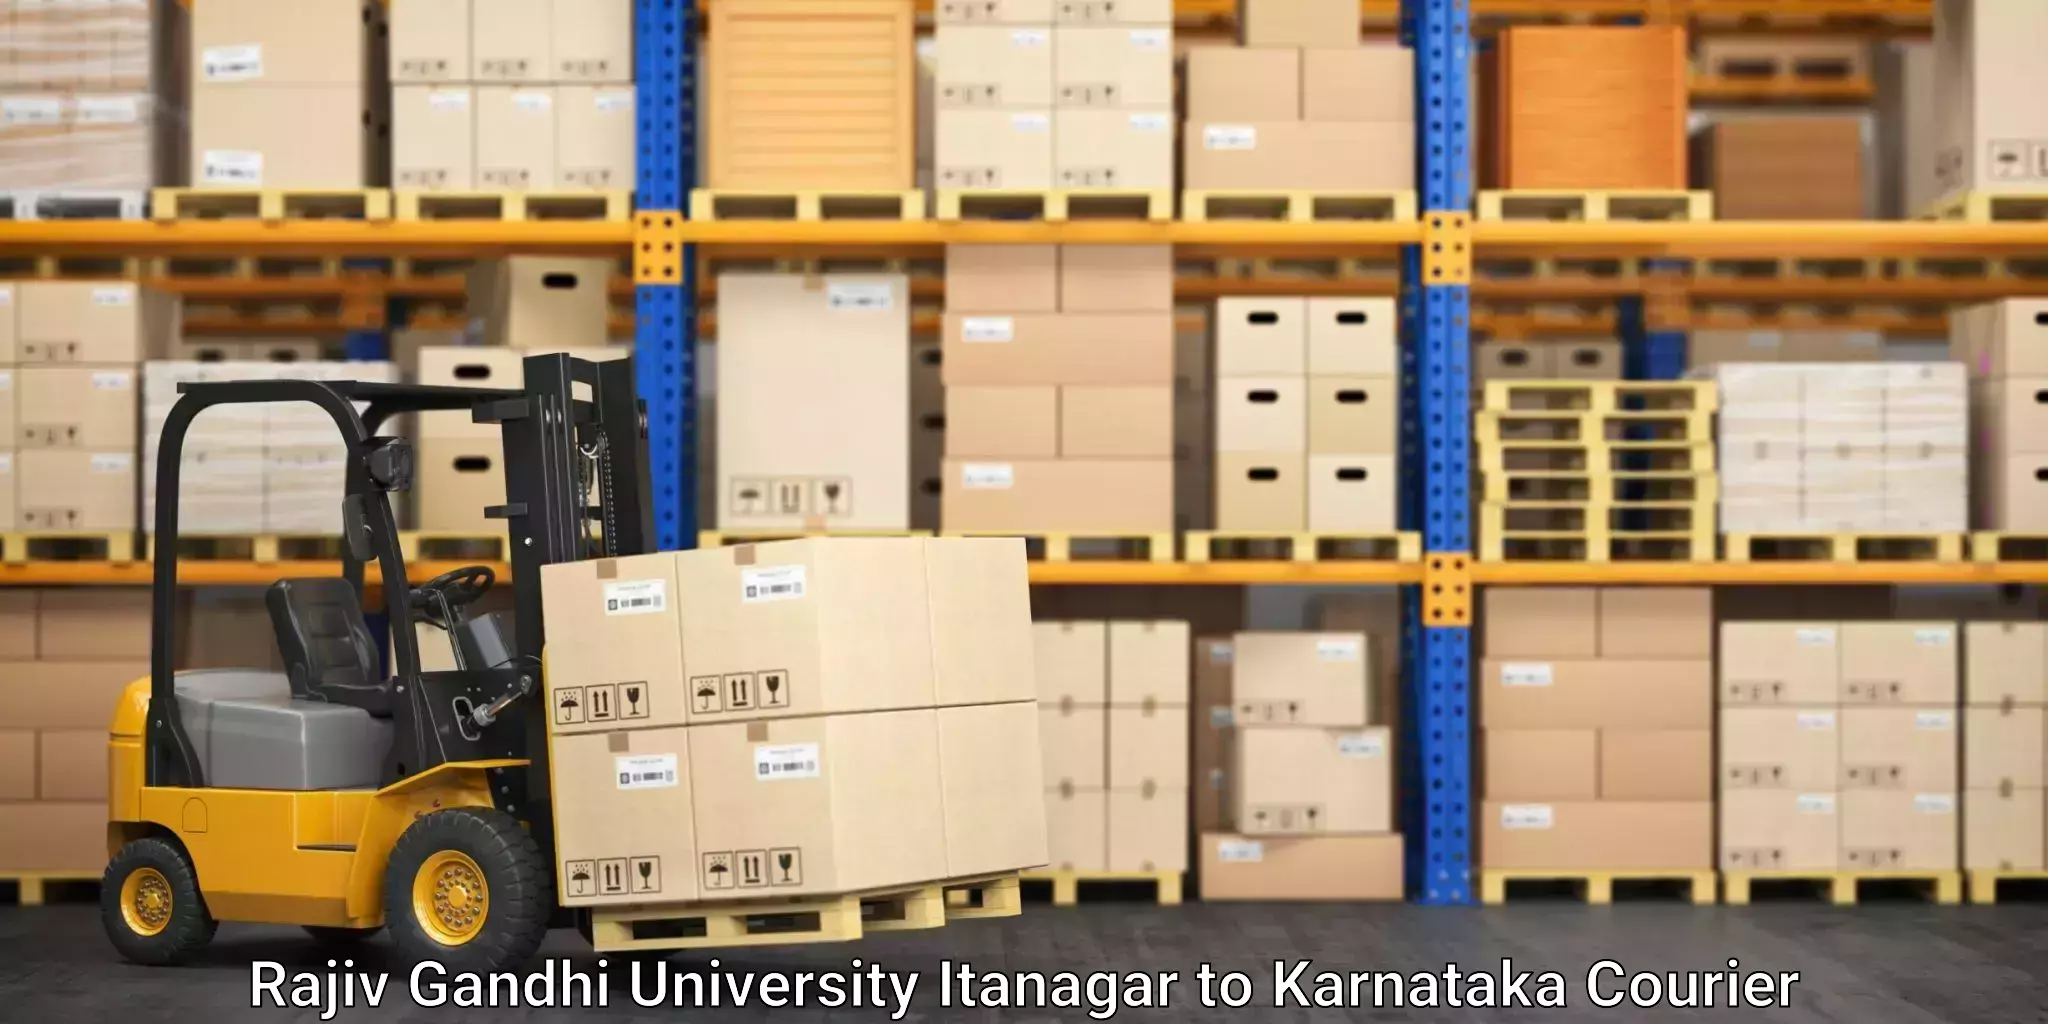 24/7 shipping services Rajiv Gandhi University Itanagar to Tarikere